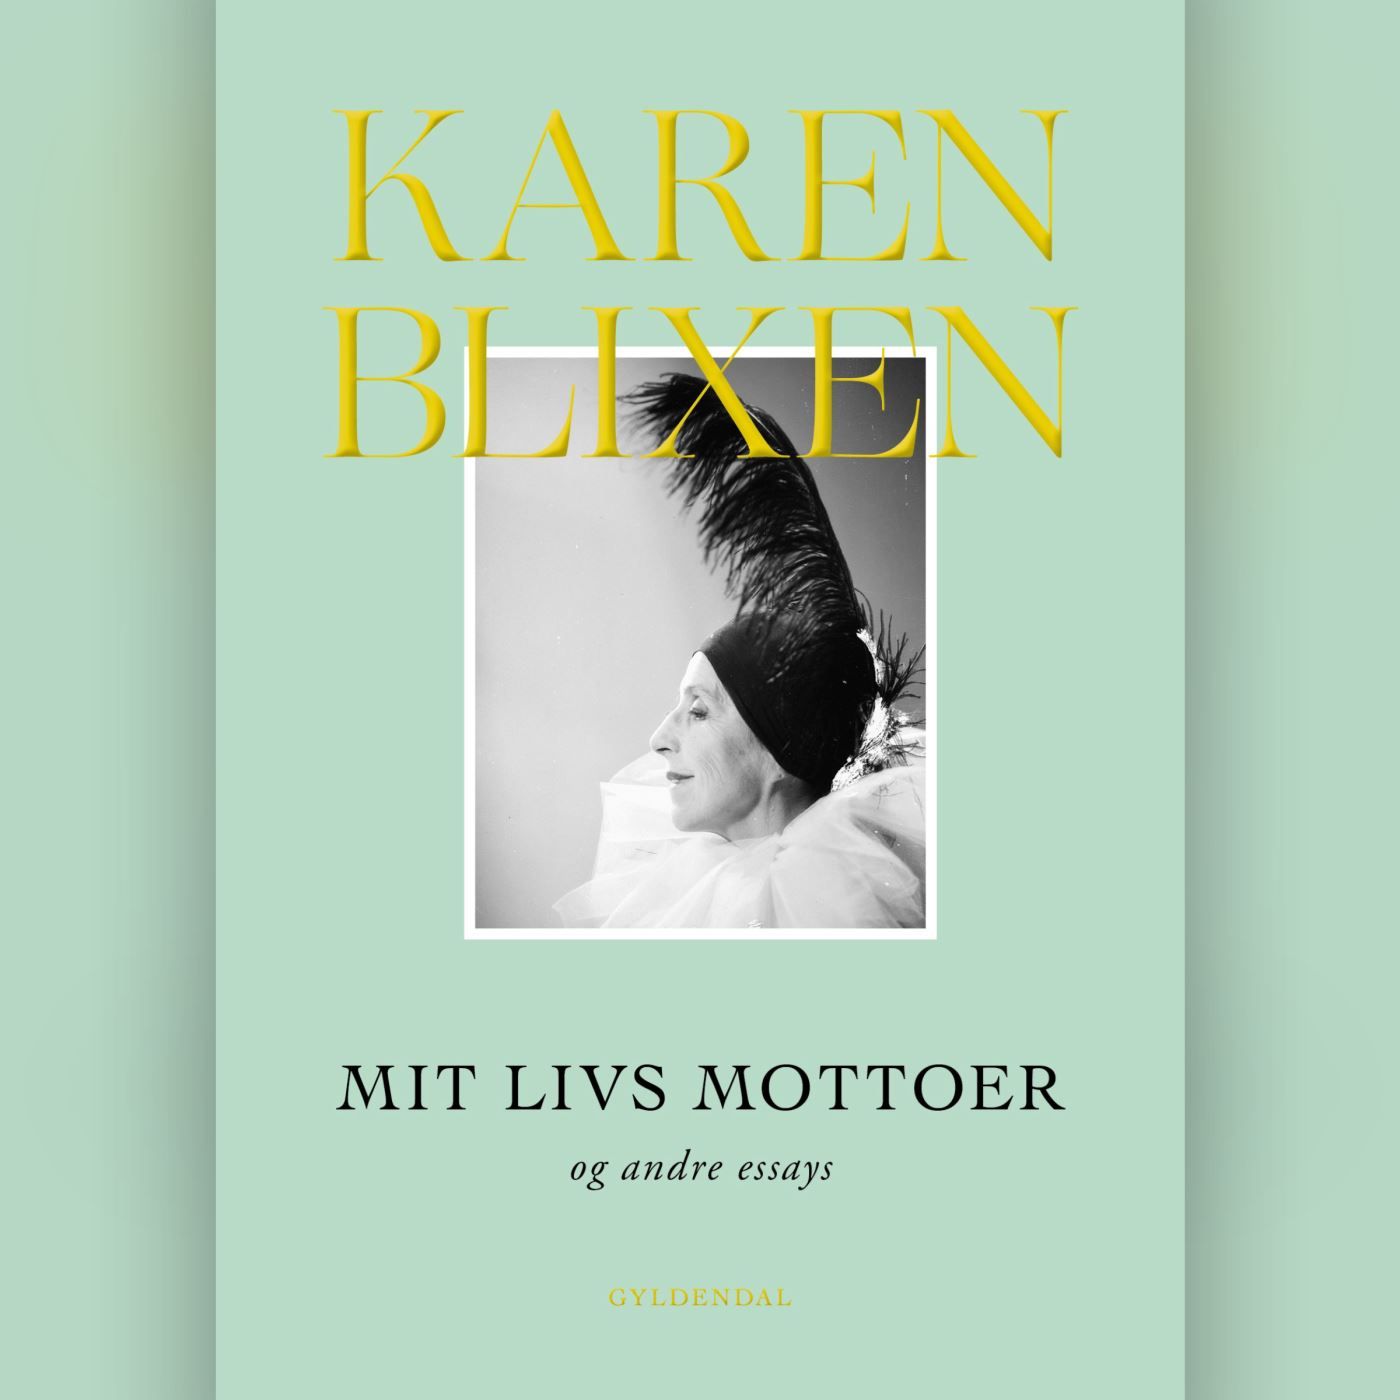 Mit livs mottoer og andre essays, lydbog af Karen Blixen